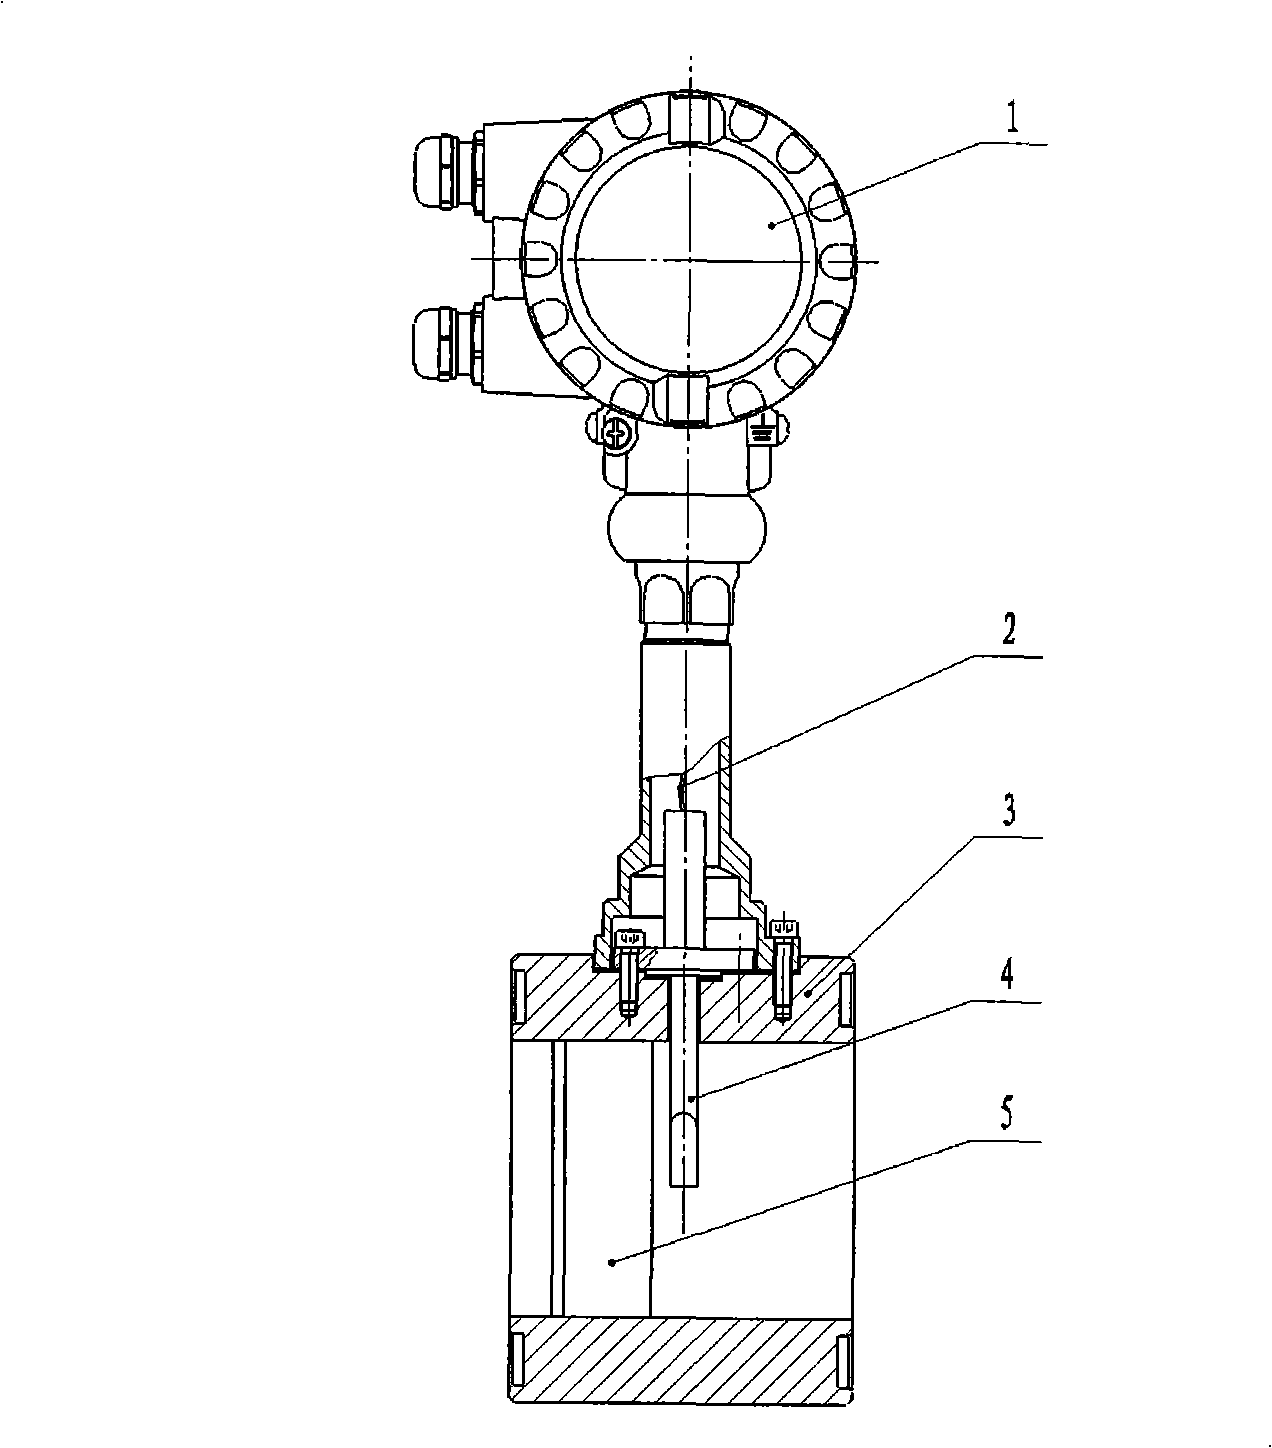 Large caliber vortex shedding flowmeter